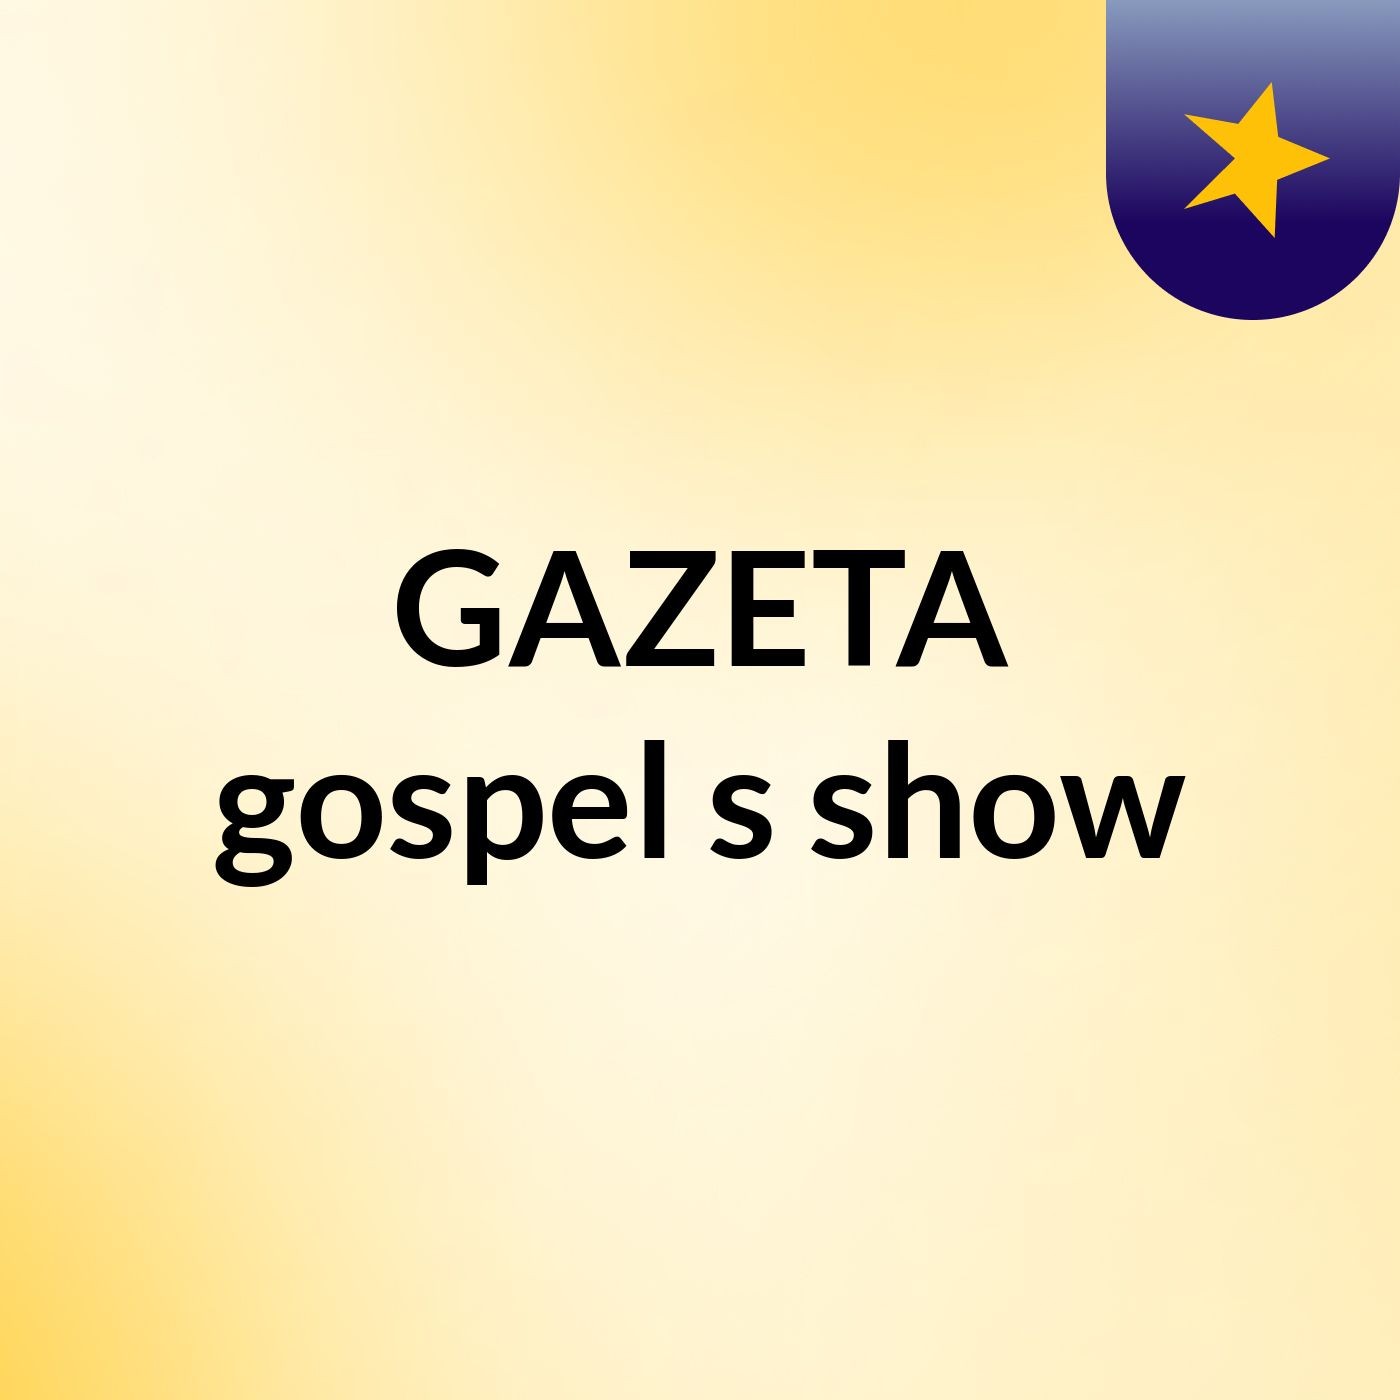 GAZETA gospel's show